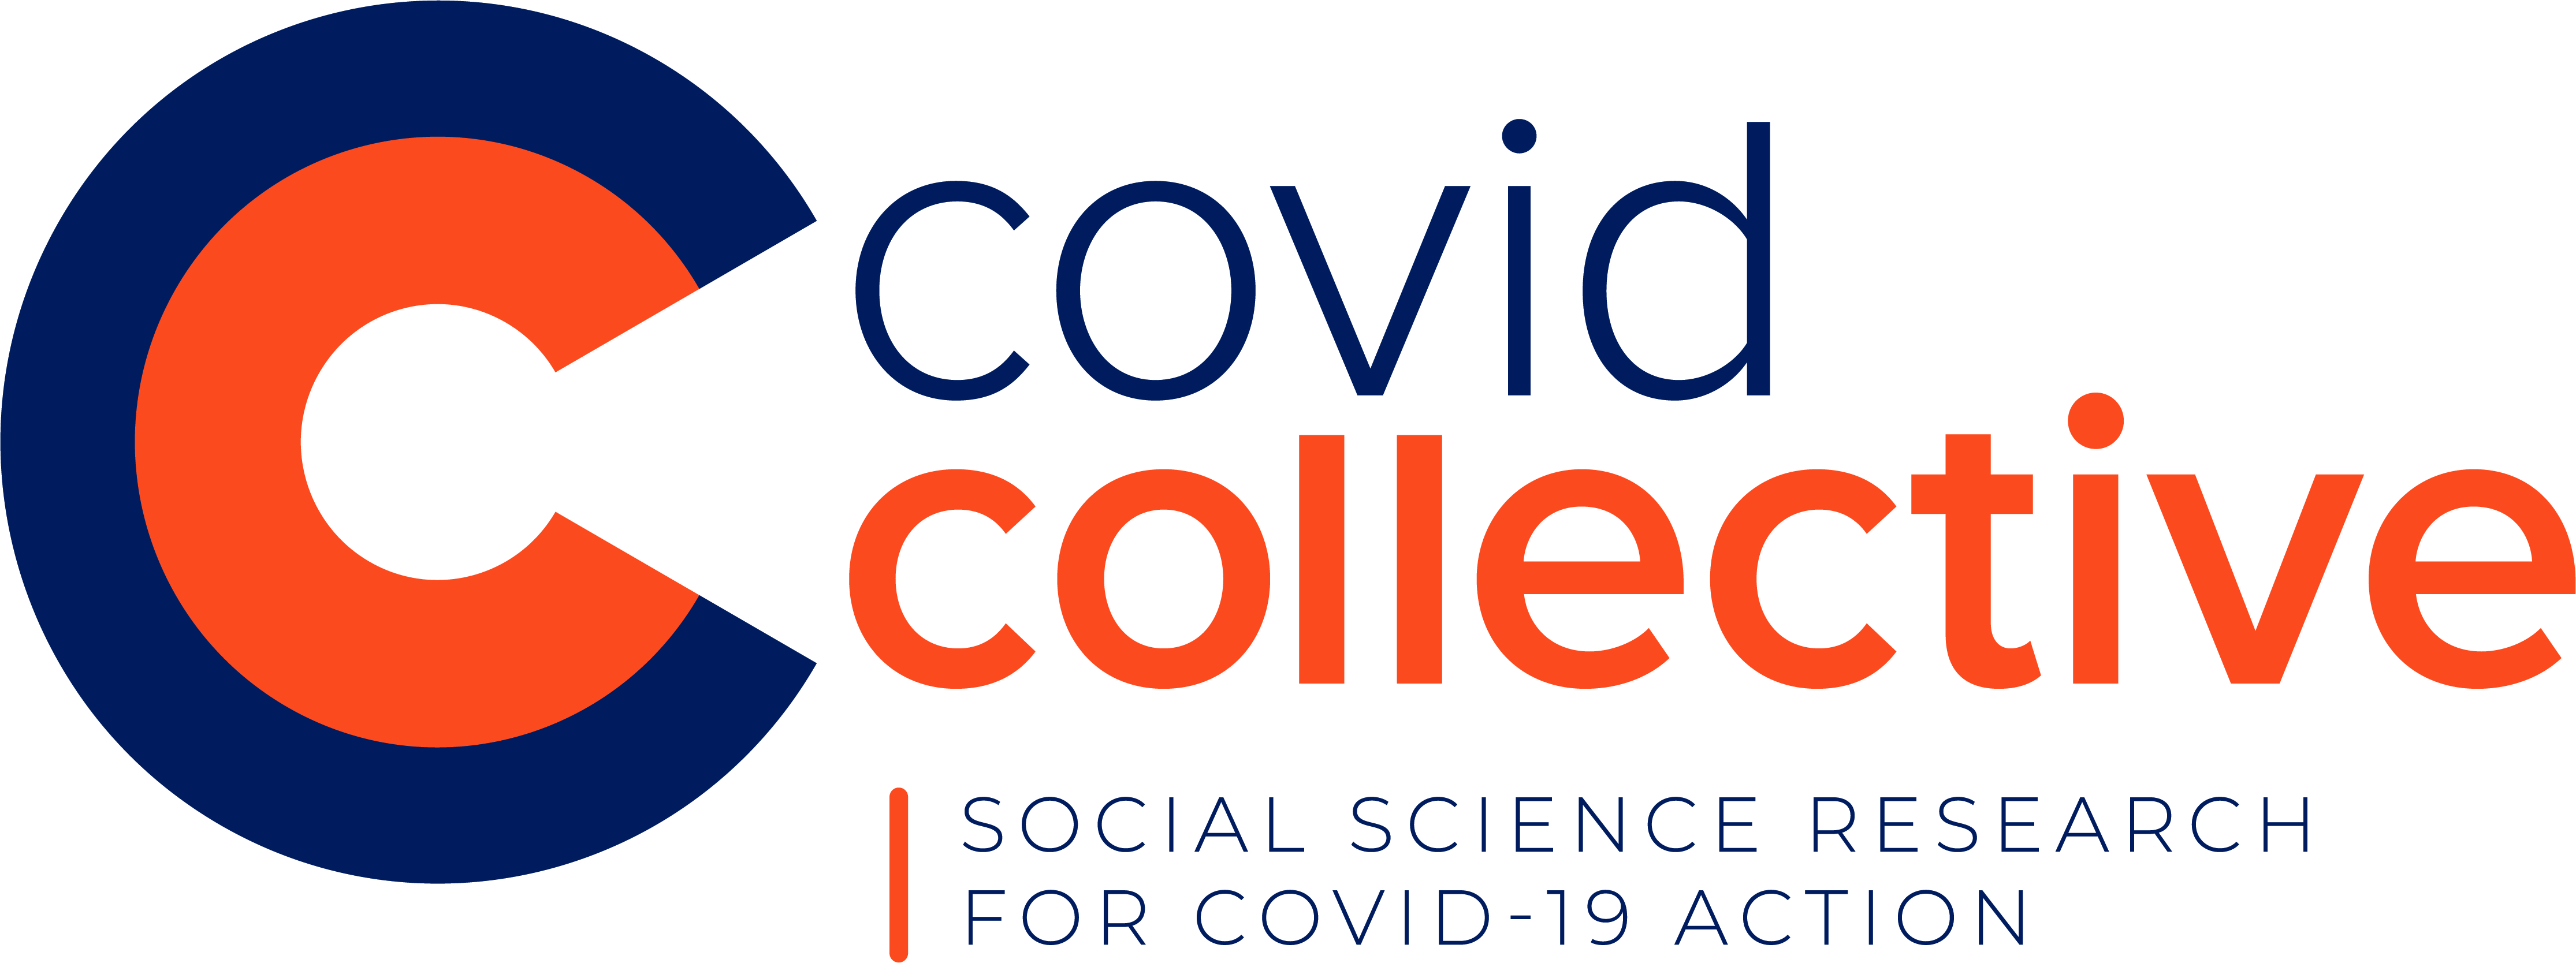 COVID Collective